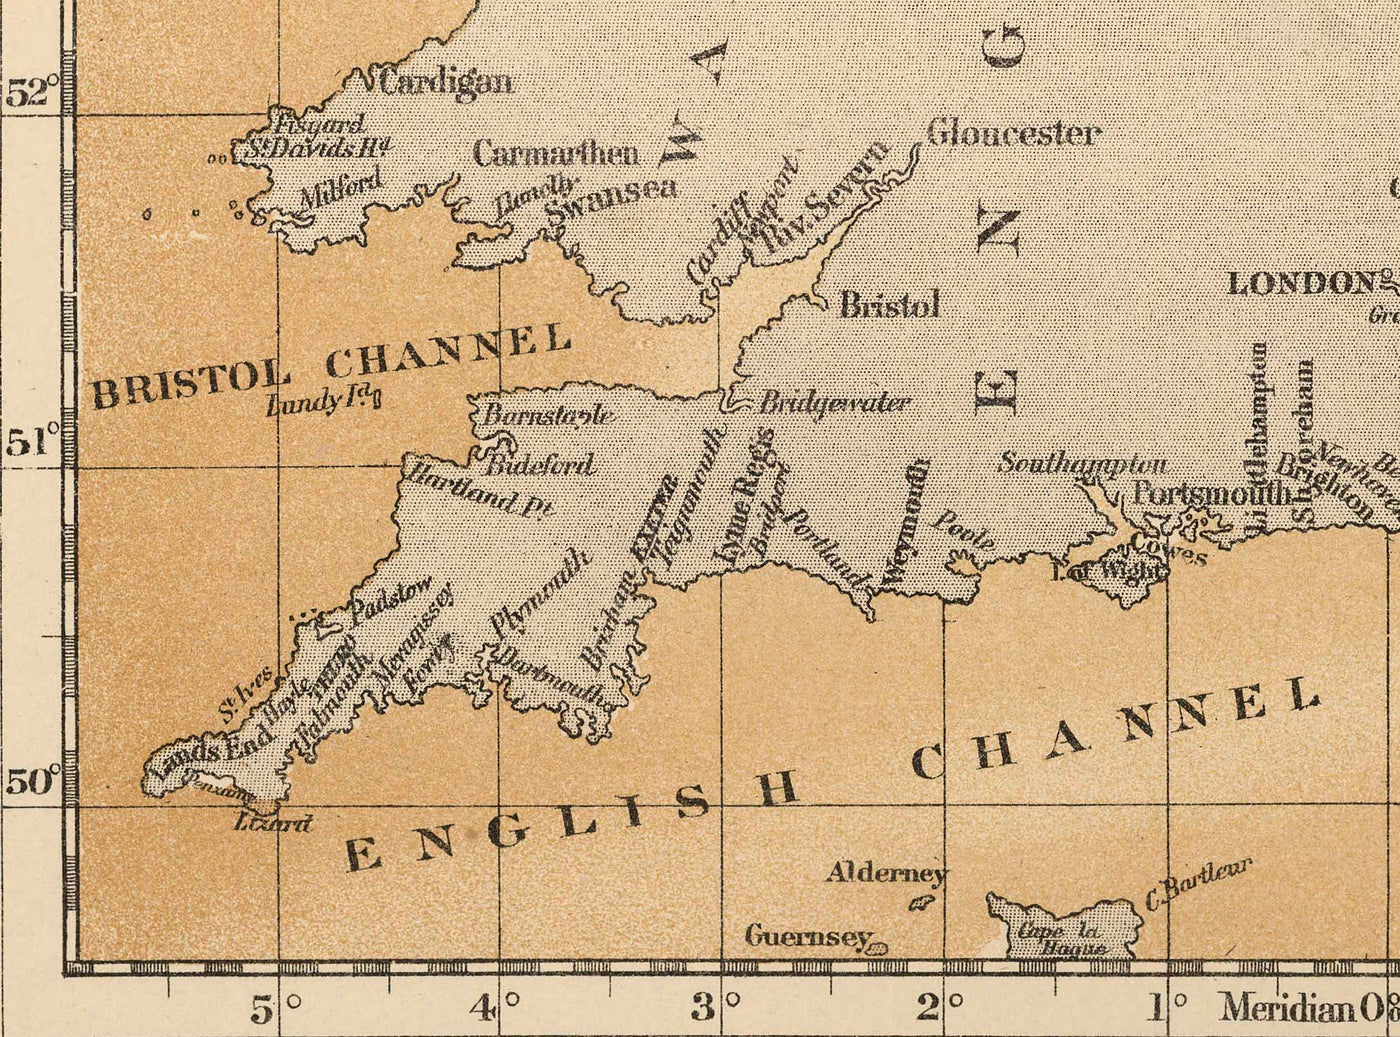 Ancienne carte de l'aiglefin de la mer du Nord, 1883, par O.T. Olsen - Pêche de l'aiglefin, répartition, frai, etc.